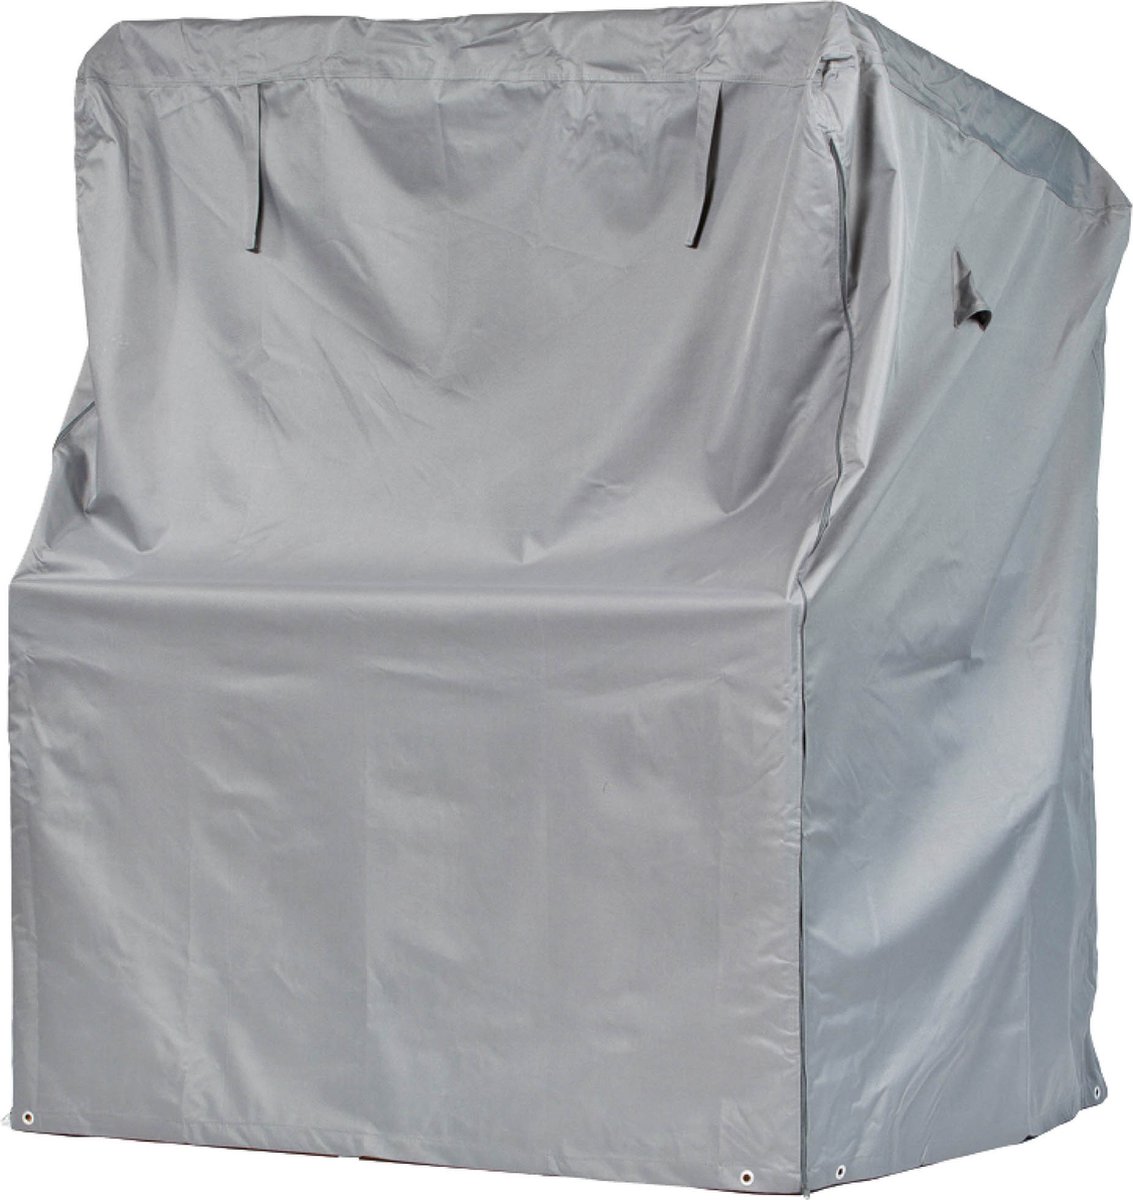 Beschermhoes voor strandstoel |165 x 100 x 165/140 cm | polyesterweefsel van het type Oxford 600D, kleur: grijs.